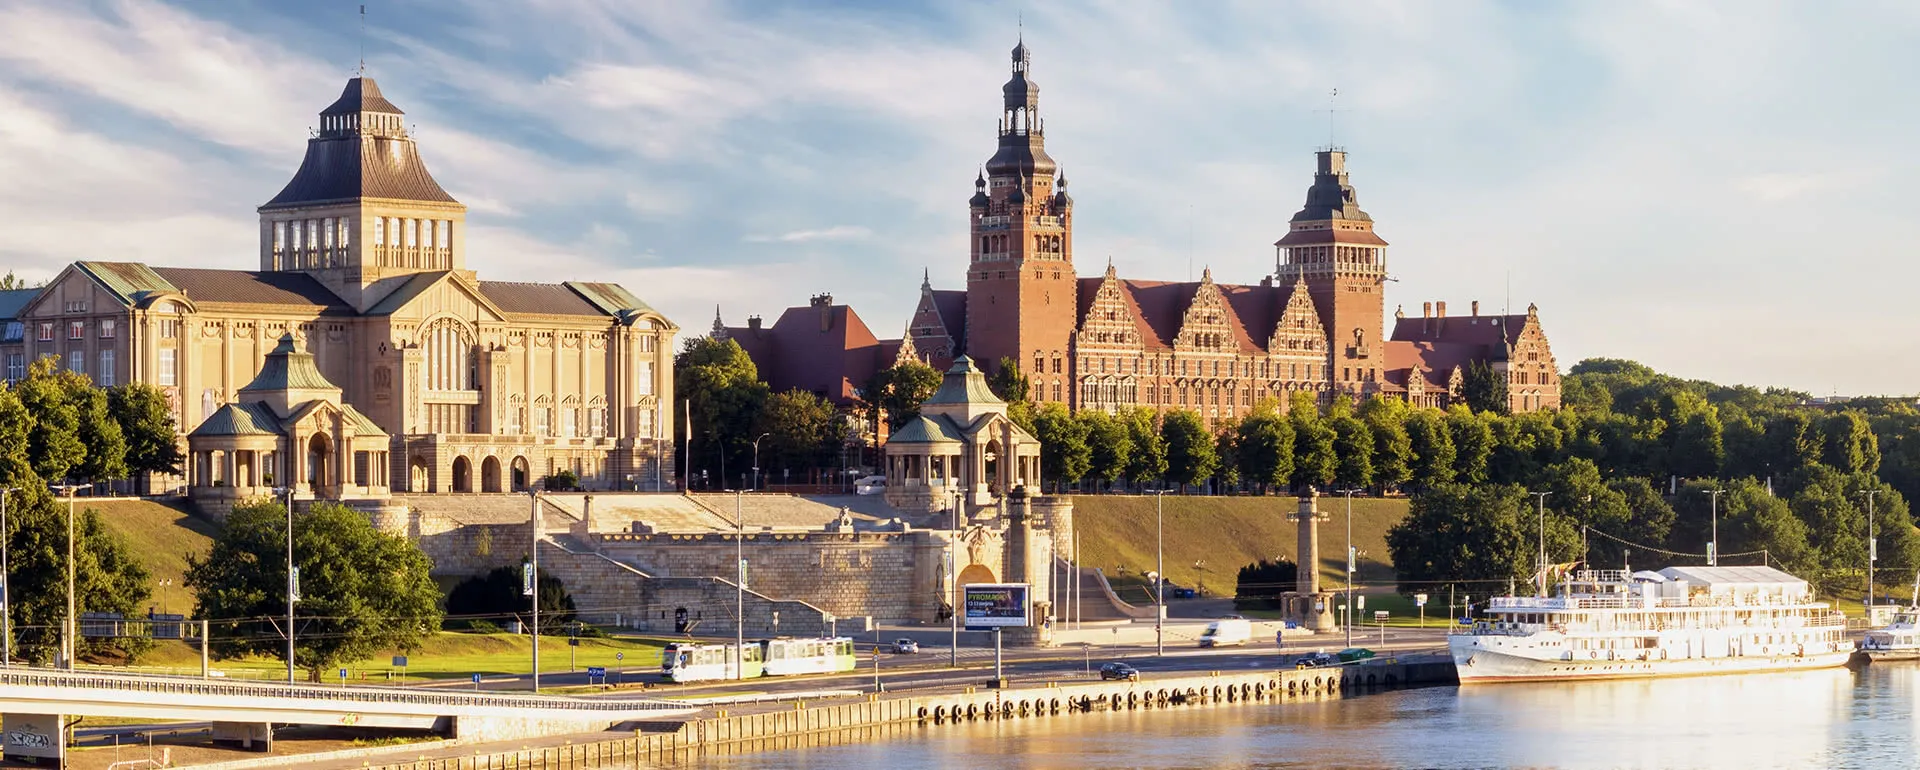 Szczecin - the destination for company trips